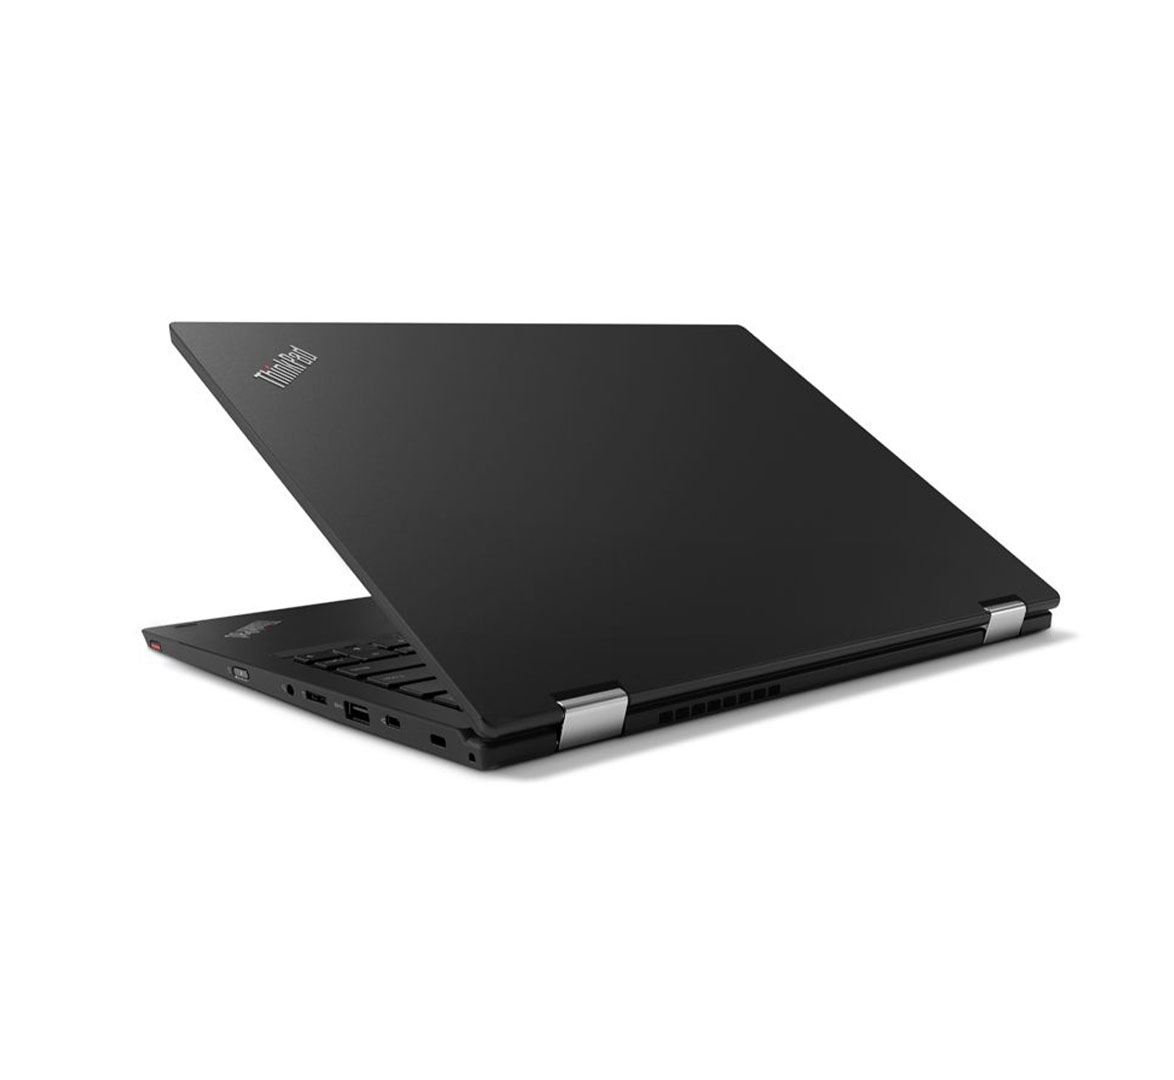 لینوفو ثينكباد L380 Yoga للأعمال، معالج انتل کور i5-8th الجیل، ذاكرة الوصول العشوائي 8 جيجابايت، قرص صلب 256 جيجابايت SSD، شاشة لمس 13 360° بوصة